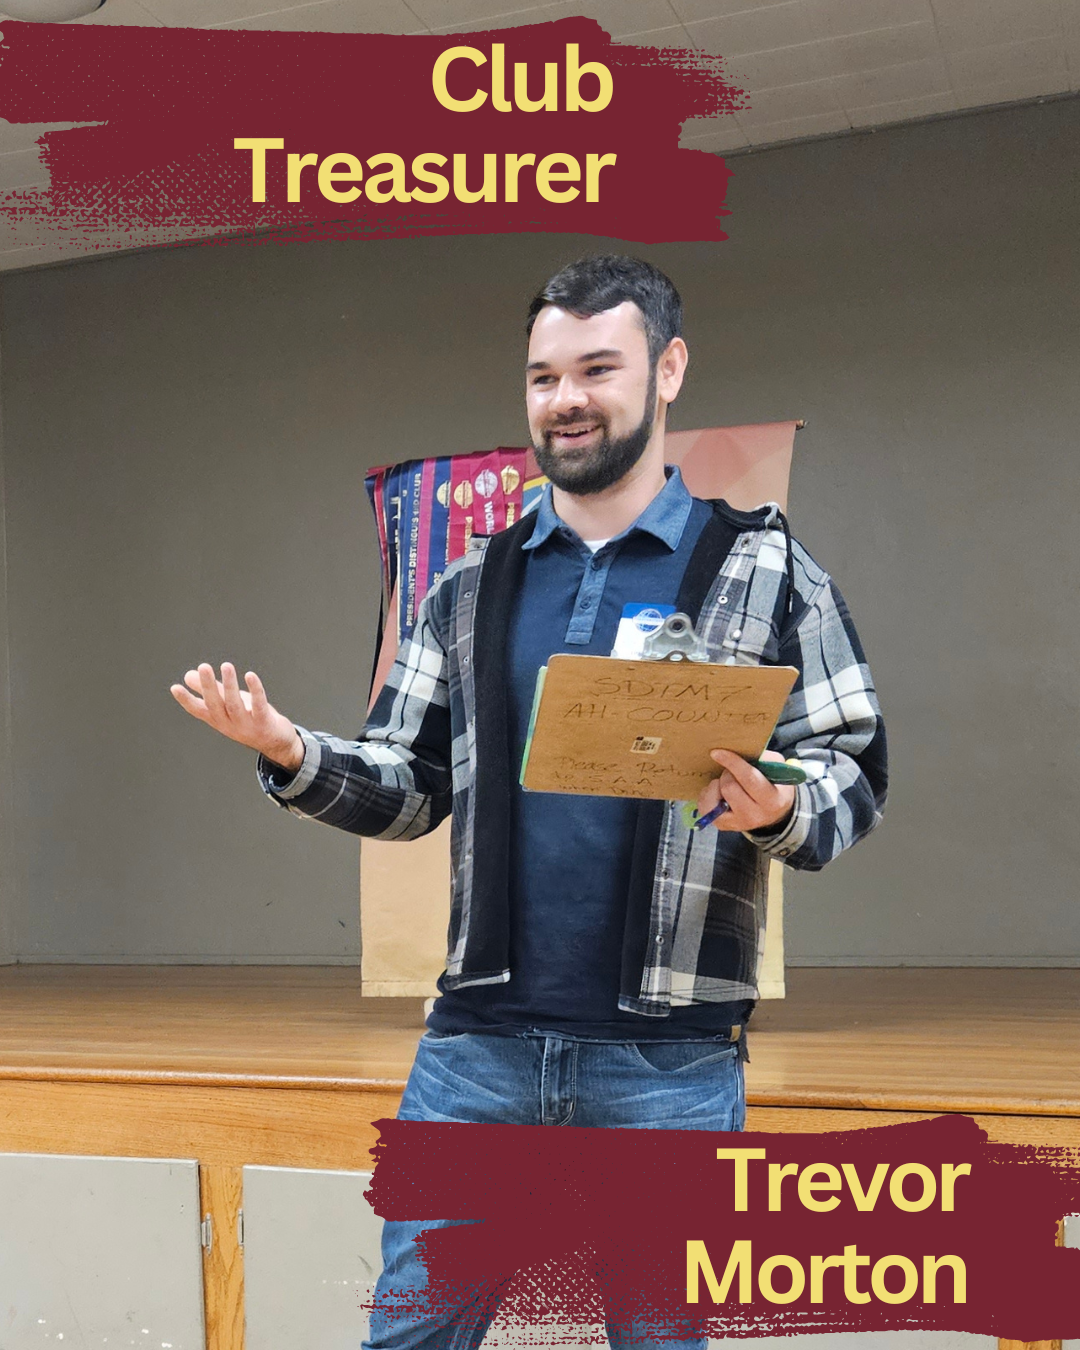 Club Treasurer, Trevor Morton